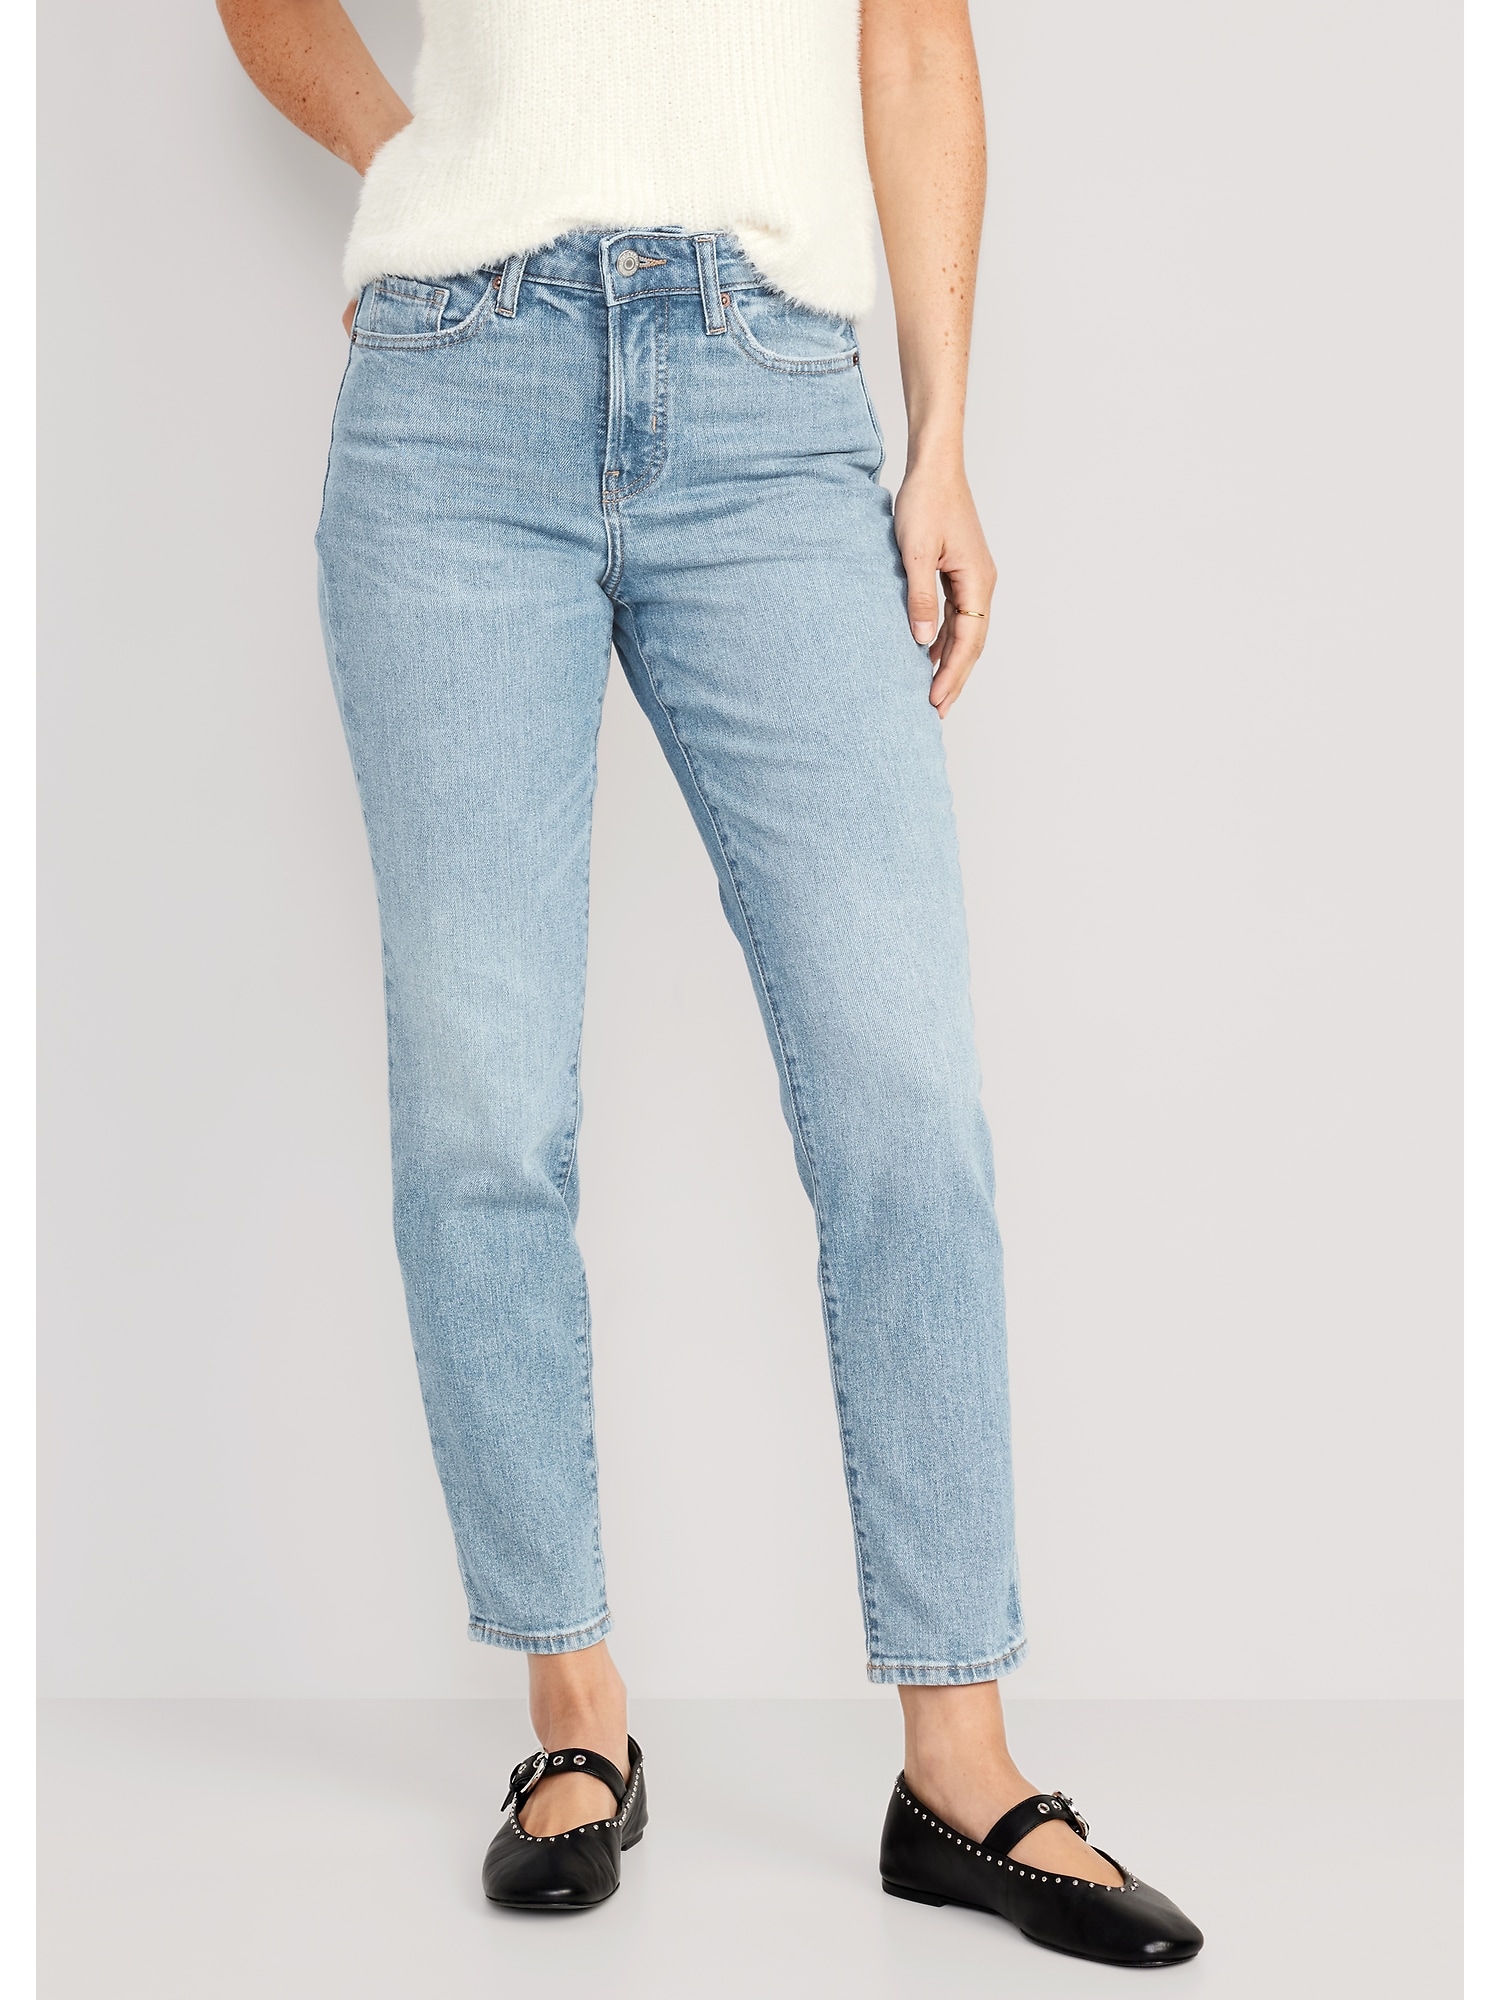 Oldnavy High-Waisted OG Straight Cotton-Hemp Blend Ankle Jeans for Women